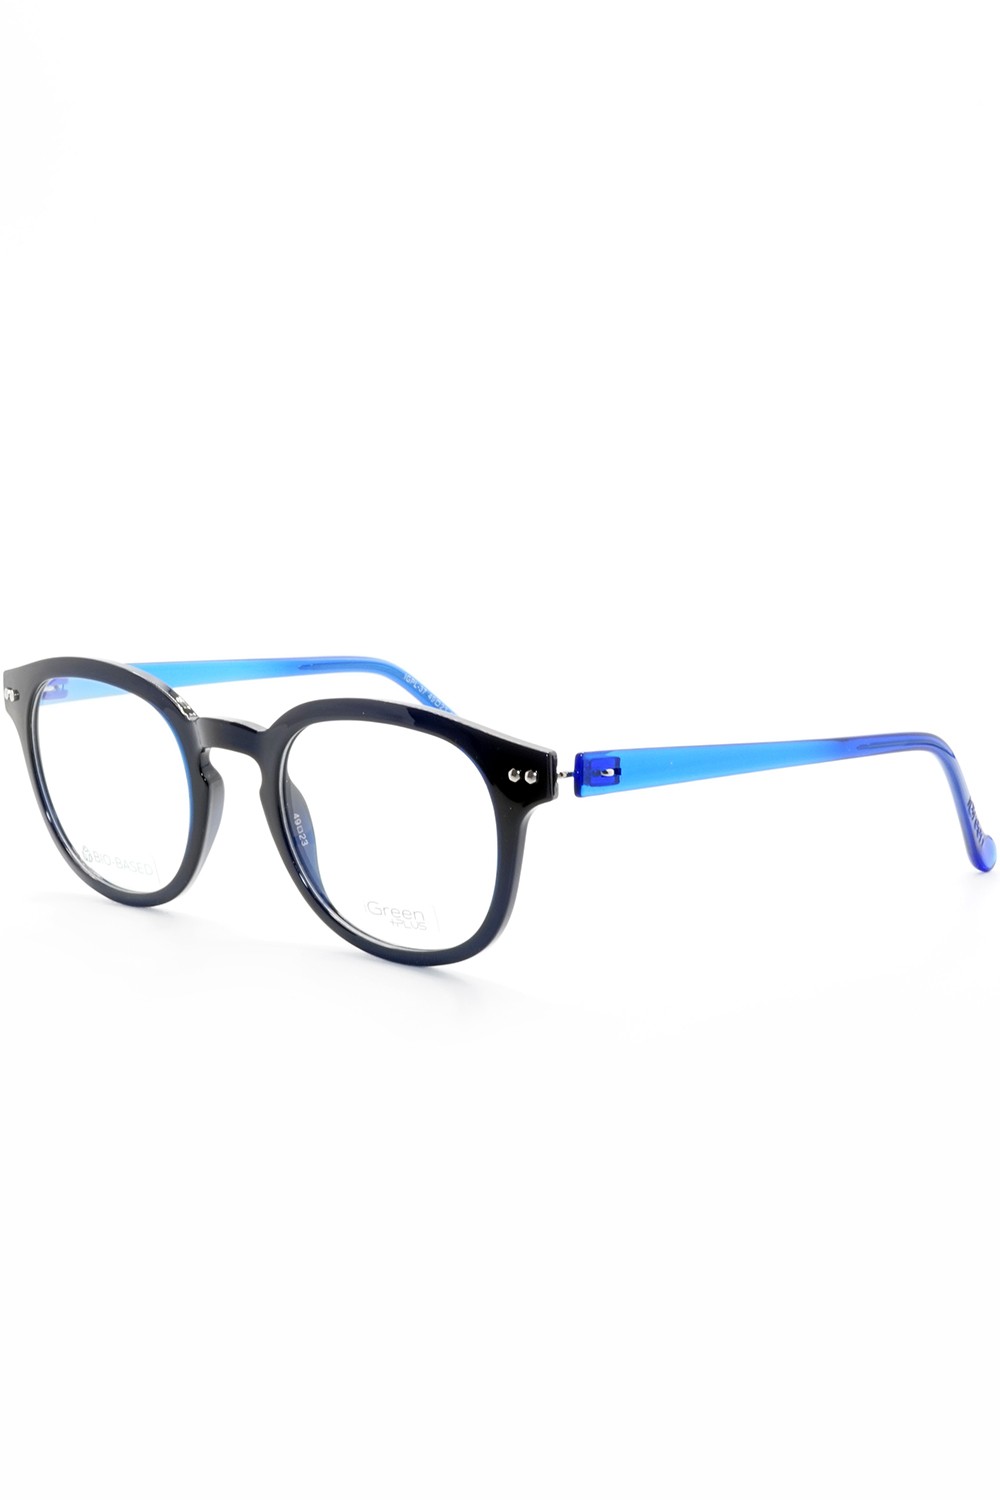 iGreen - Occhiali da vista in celluloide tondi unisex con clip solare blu -